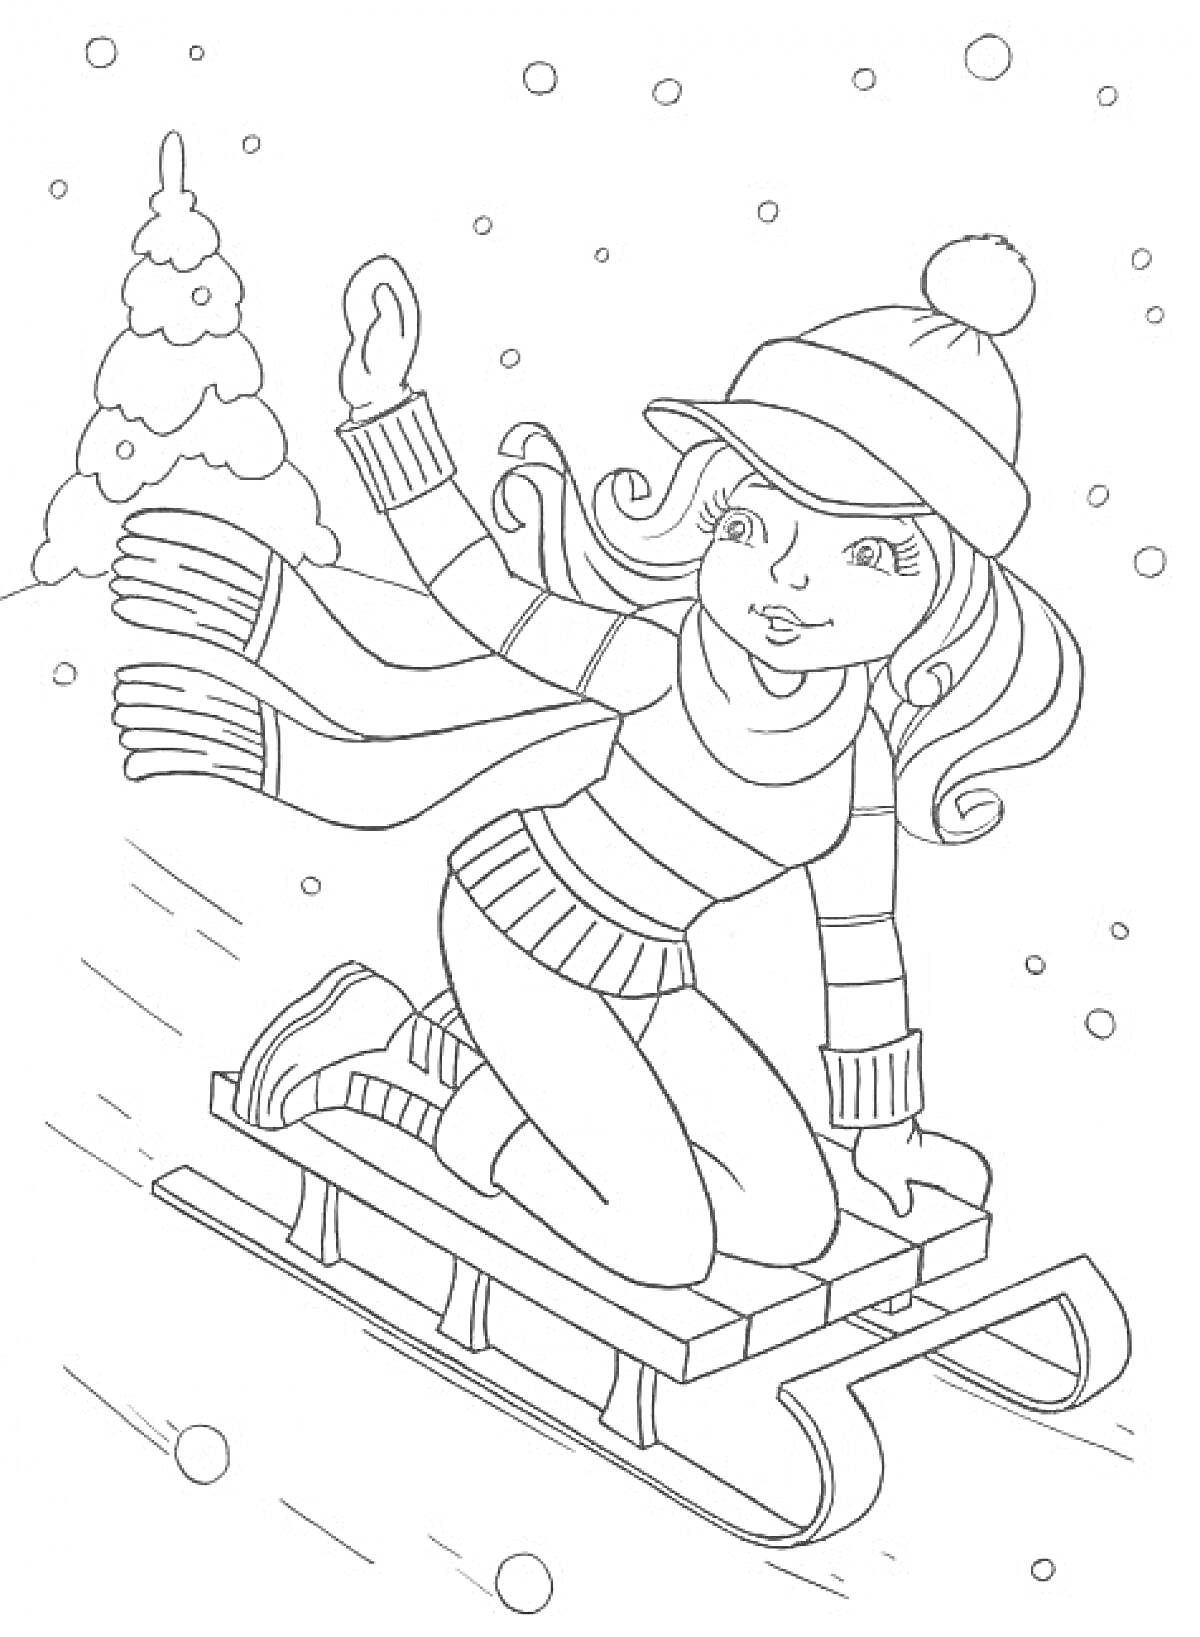 Раскраска Девочка в шапке с помпоном спускается на санках по снегу мимо заснеженной ёлки, вокруг падает снег